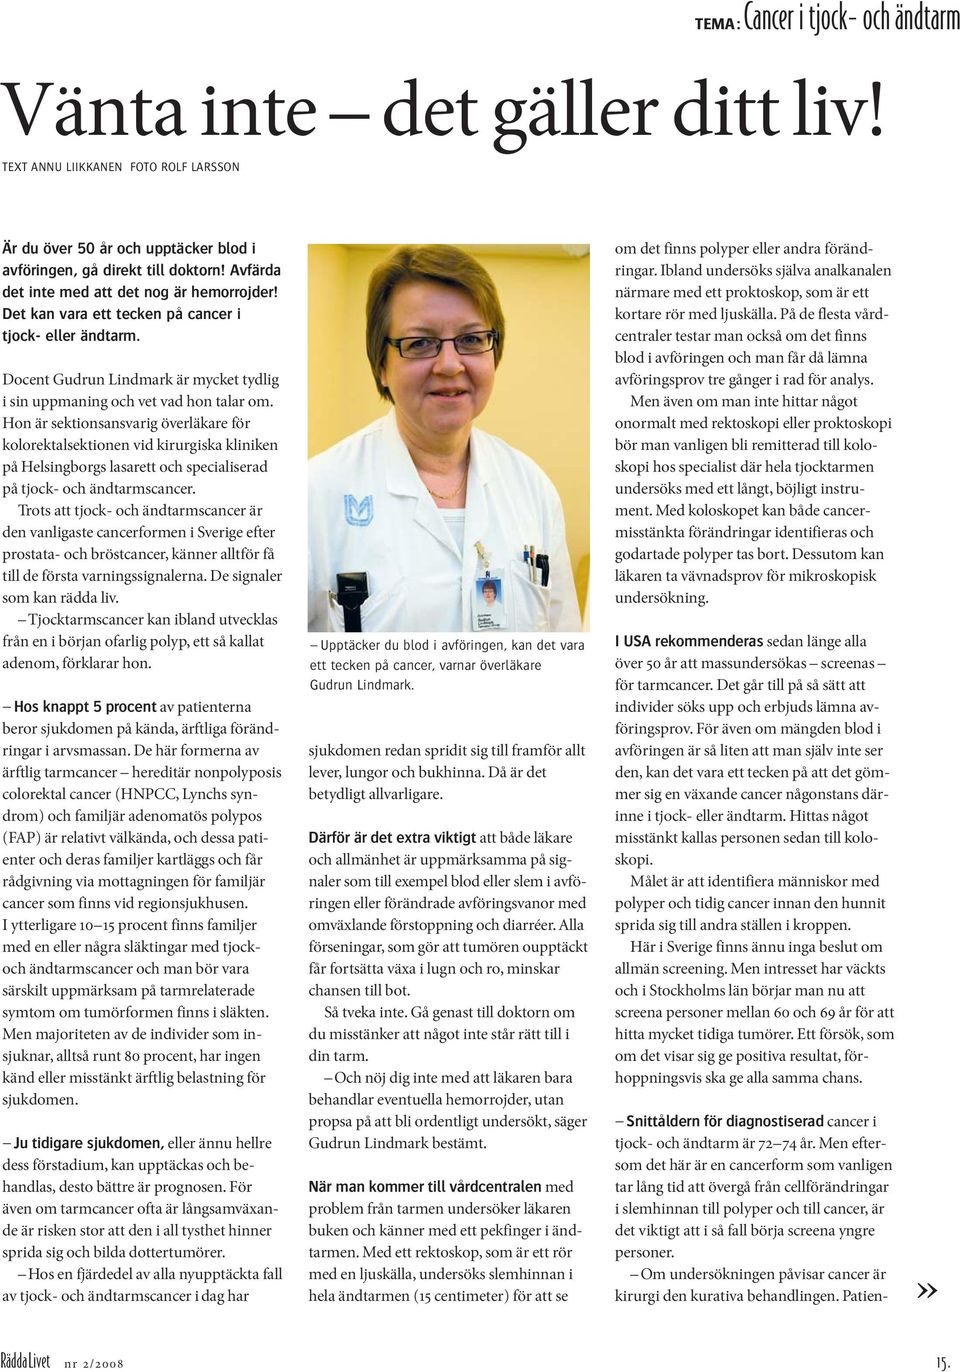 Hon är sektionsansvarig överläkare för kolorektalsektionen vid kirurgiska kliniken på Helsingborgs lasarett och specialiserad på tjock- och ändtarmscancer.